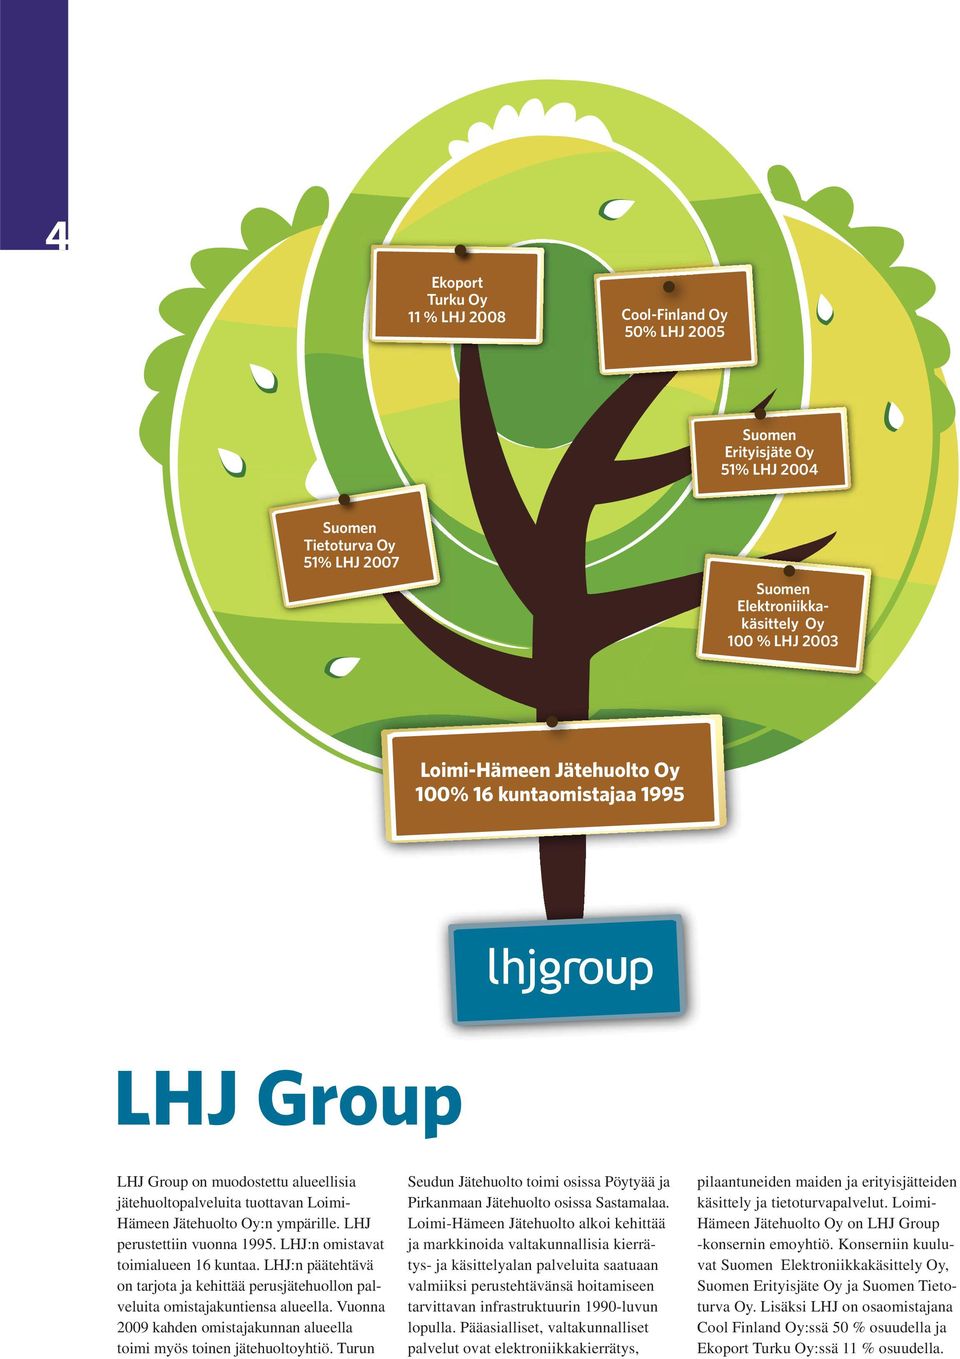 LHJ:n omistavat toimialueen 16 kuntaa. LHJ:n päätehtävä on tarjota ja kehittää perusjätehuollon palveluita omistajakuntiensa alueella.